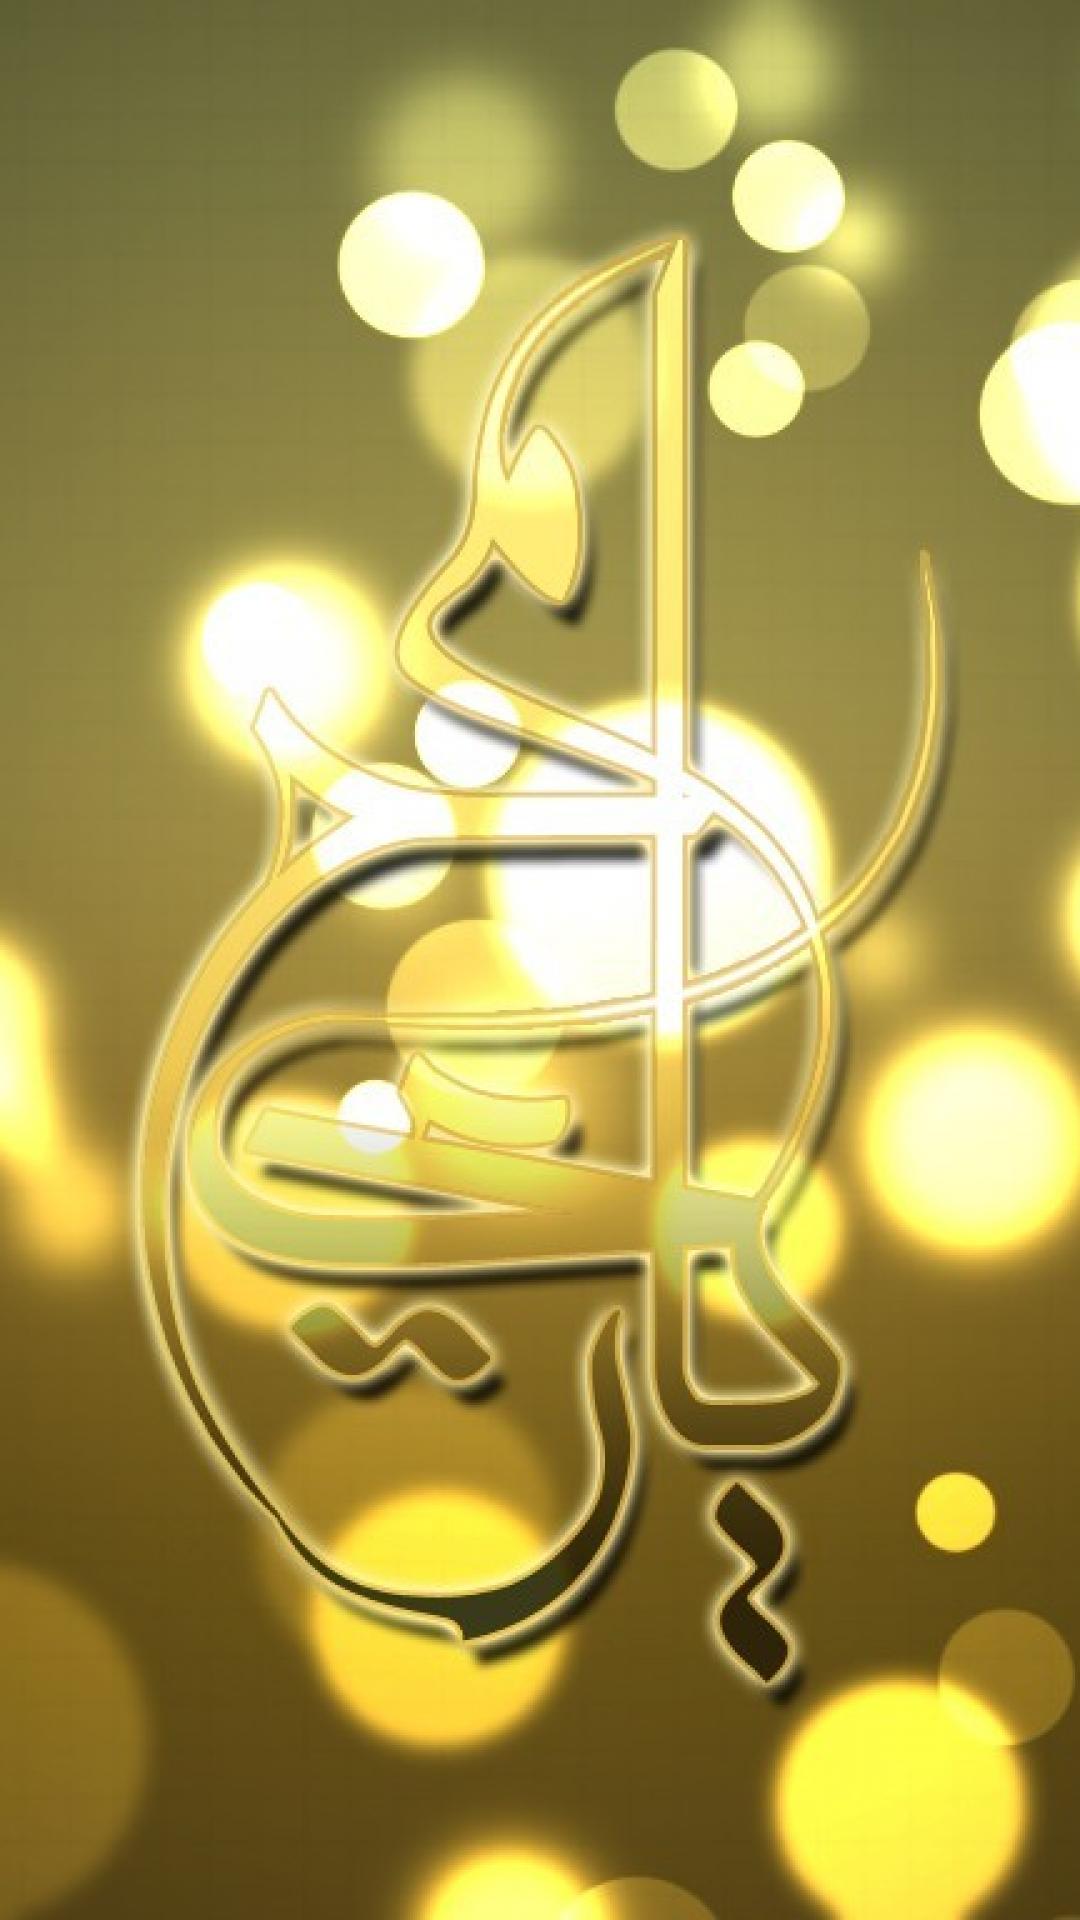 carta da parati islamica hd,giallo,font,illustrazione,grafica,disegno grafico